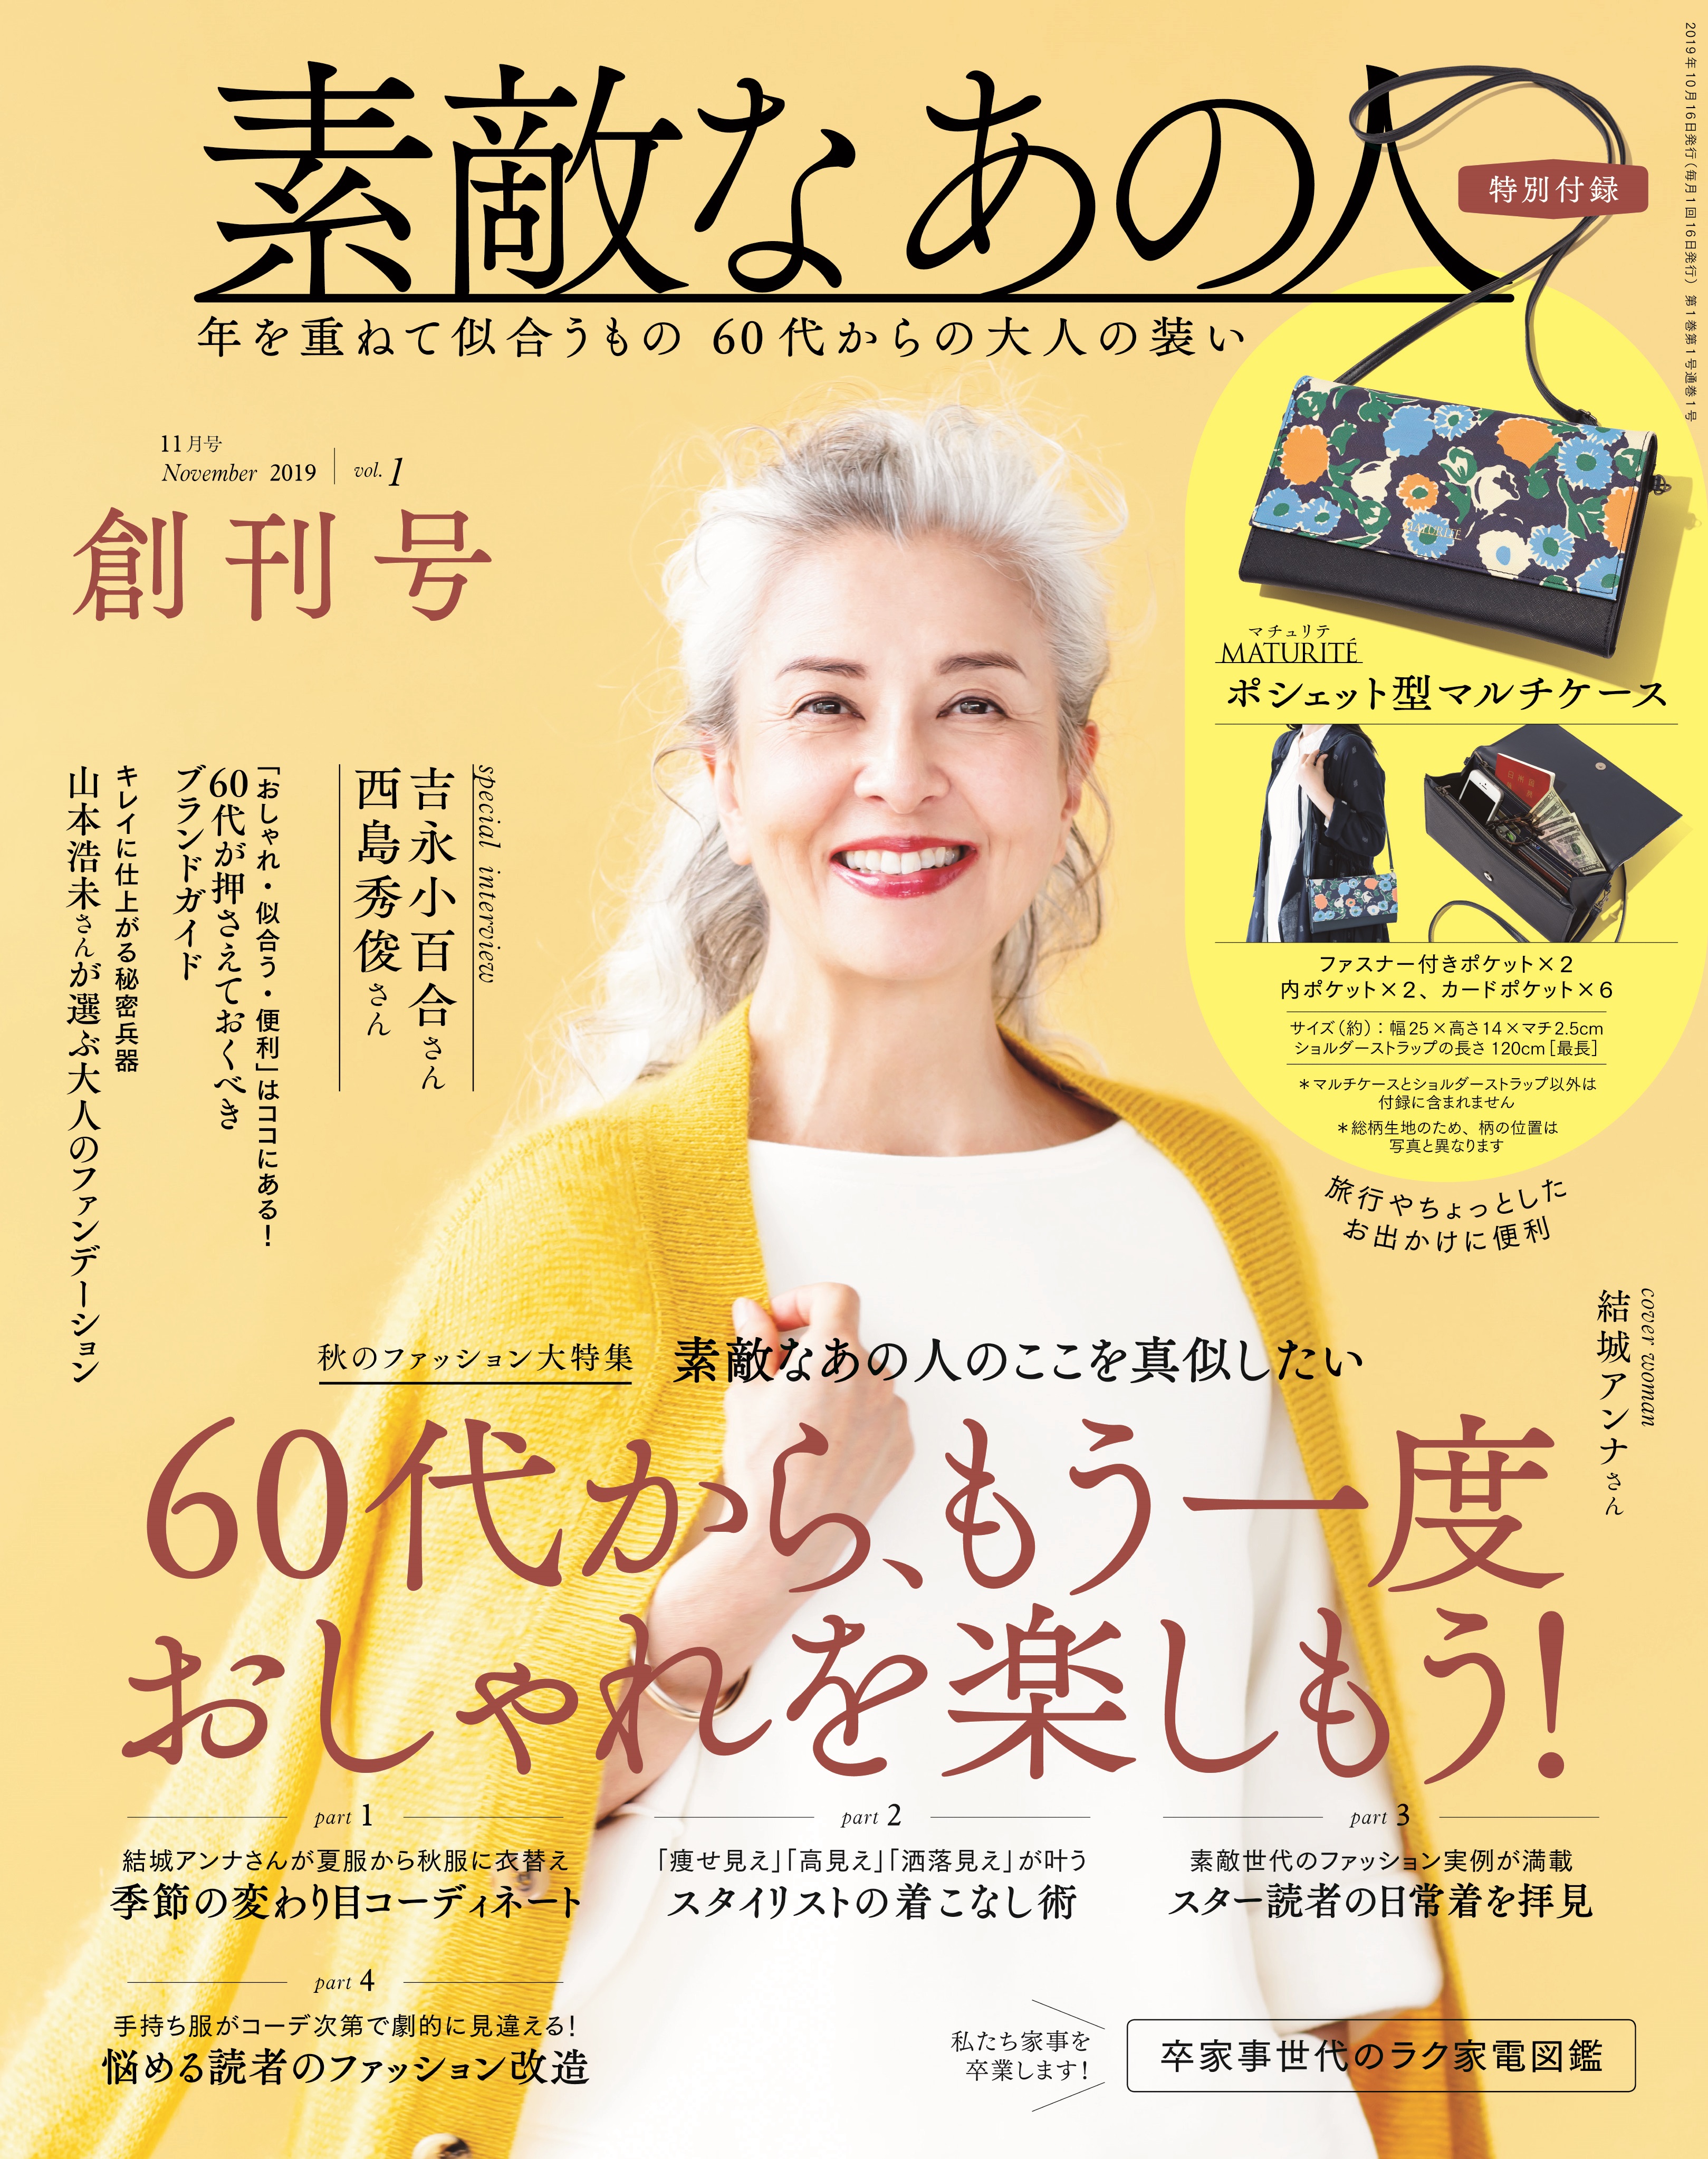 9 16 敬老の日 老人と呼ばないで 新しい60代が登場 日本初の60代女性ファション誌が創刊 株式会社 宝島社のプレスリリース